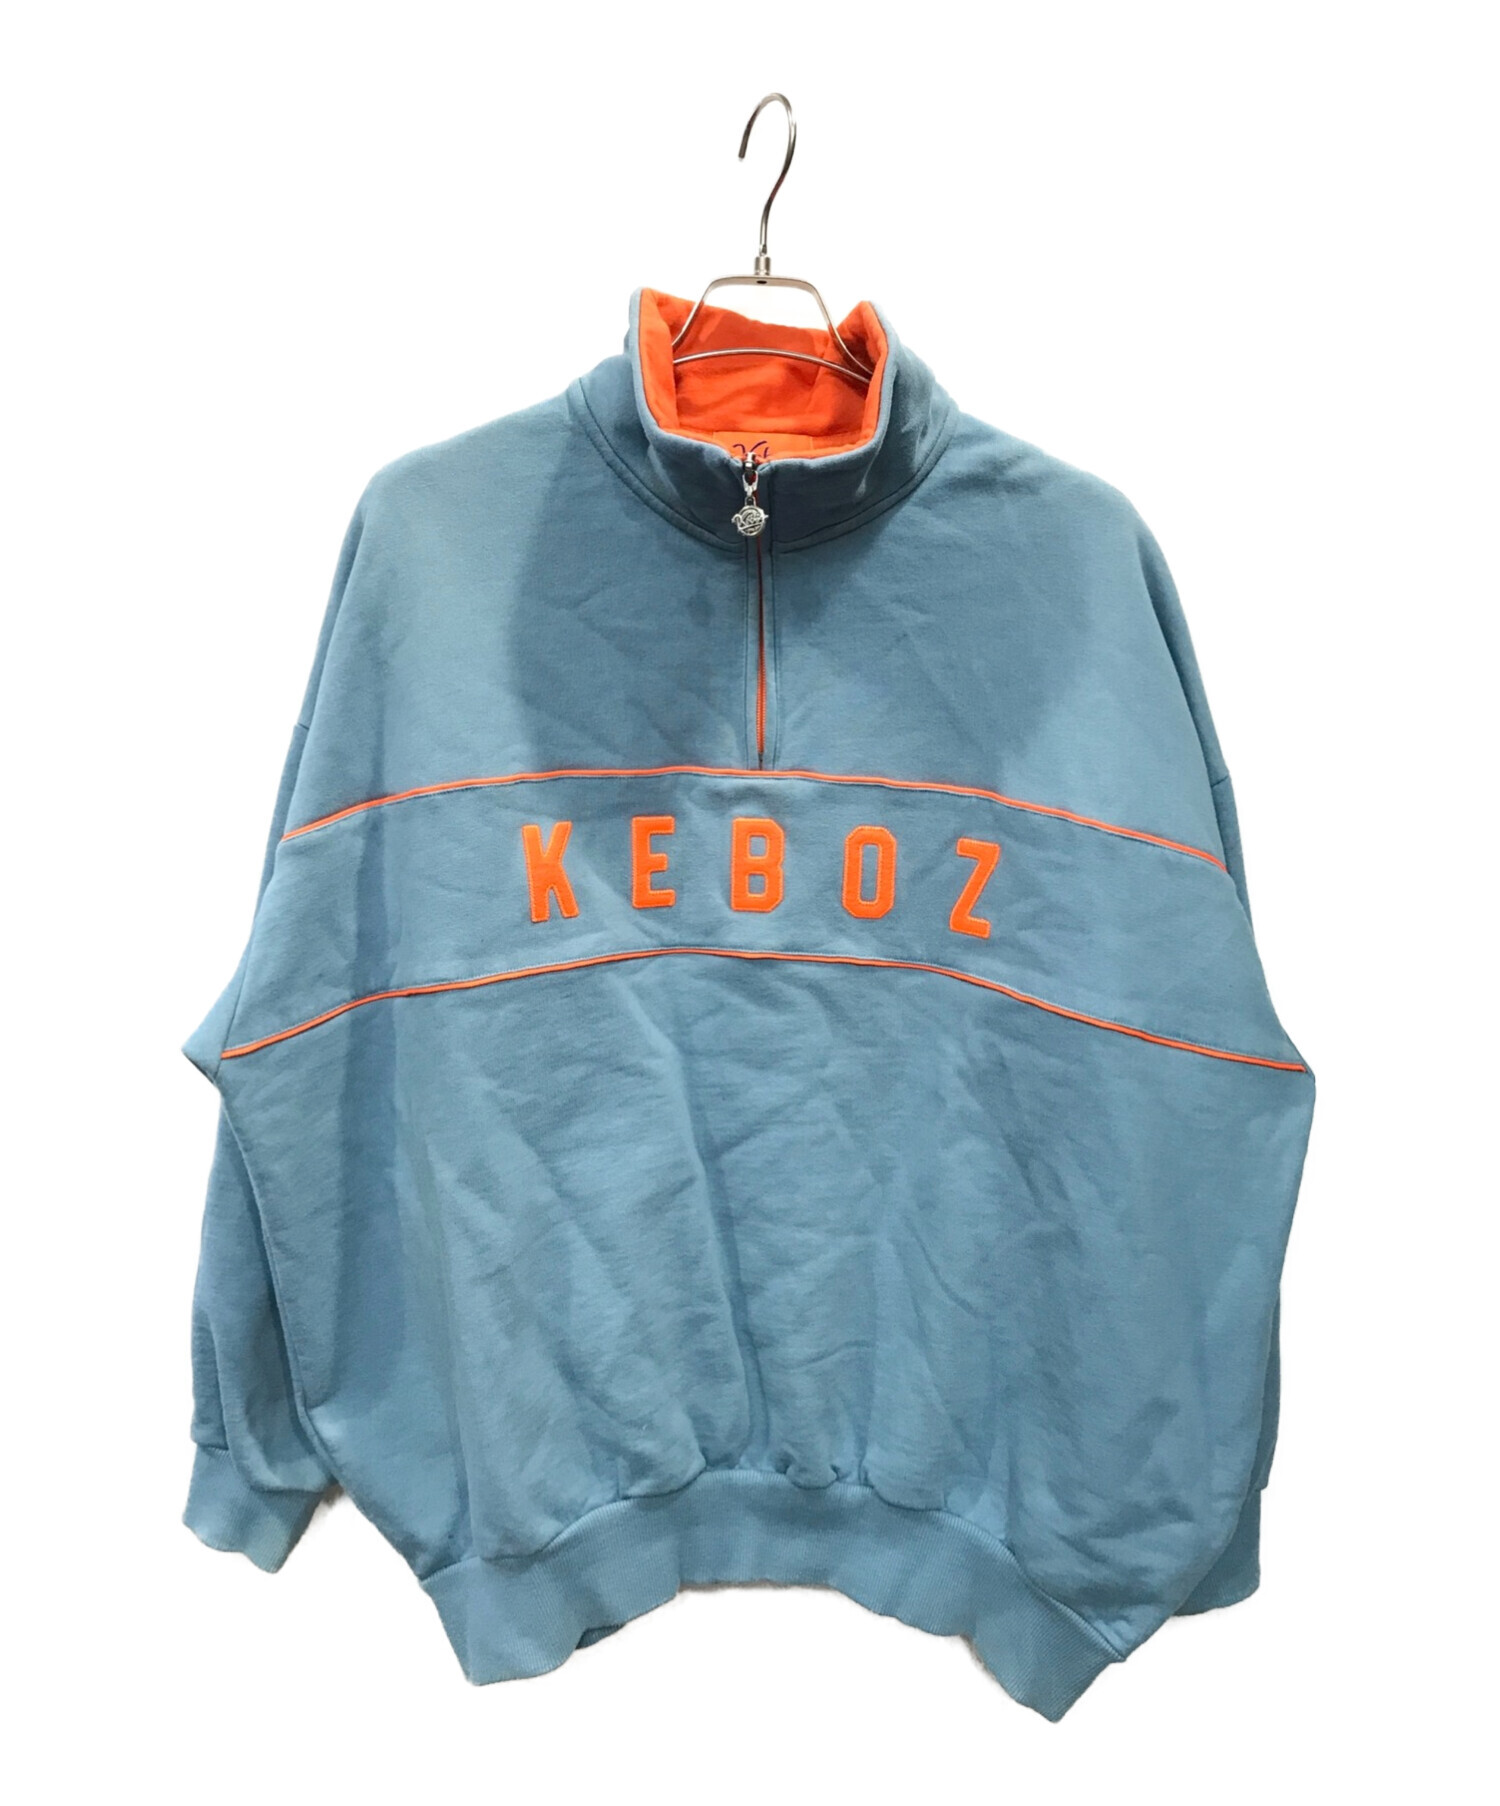 KEBOZ (ケボズ) ハーフジップスウェット ブルー×オレンジ サイズ:L